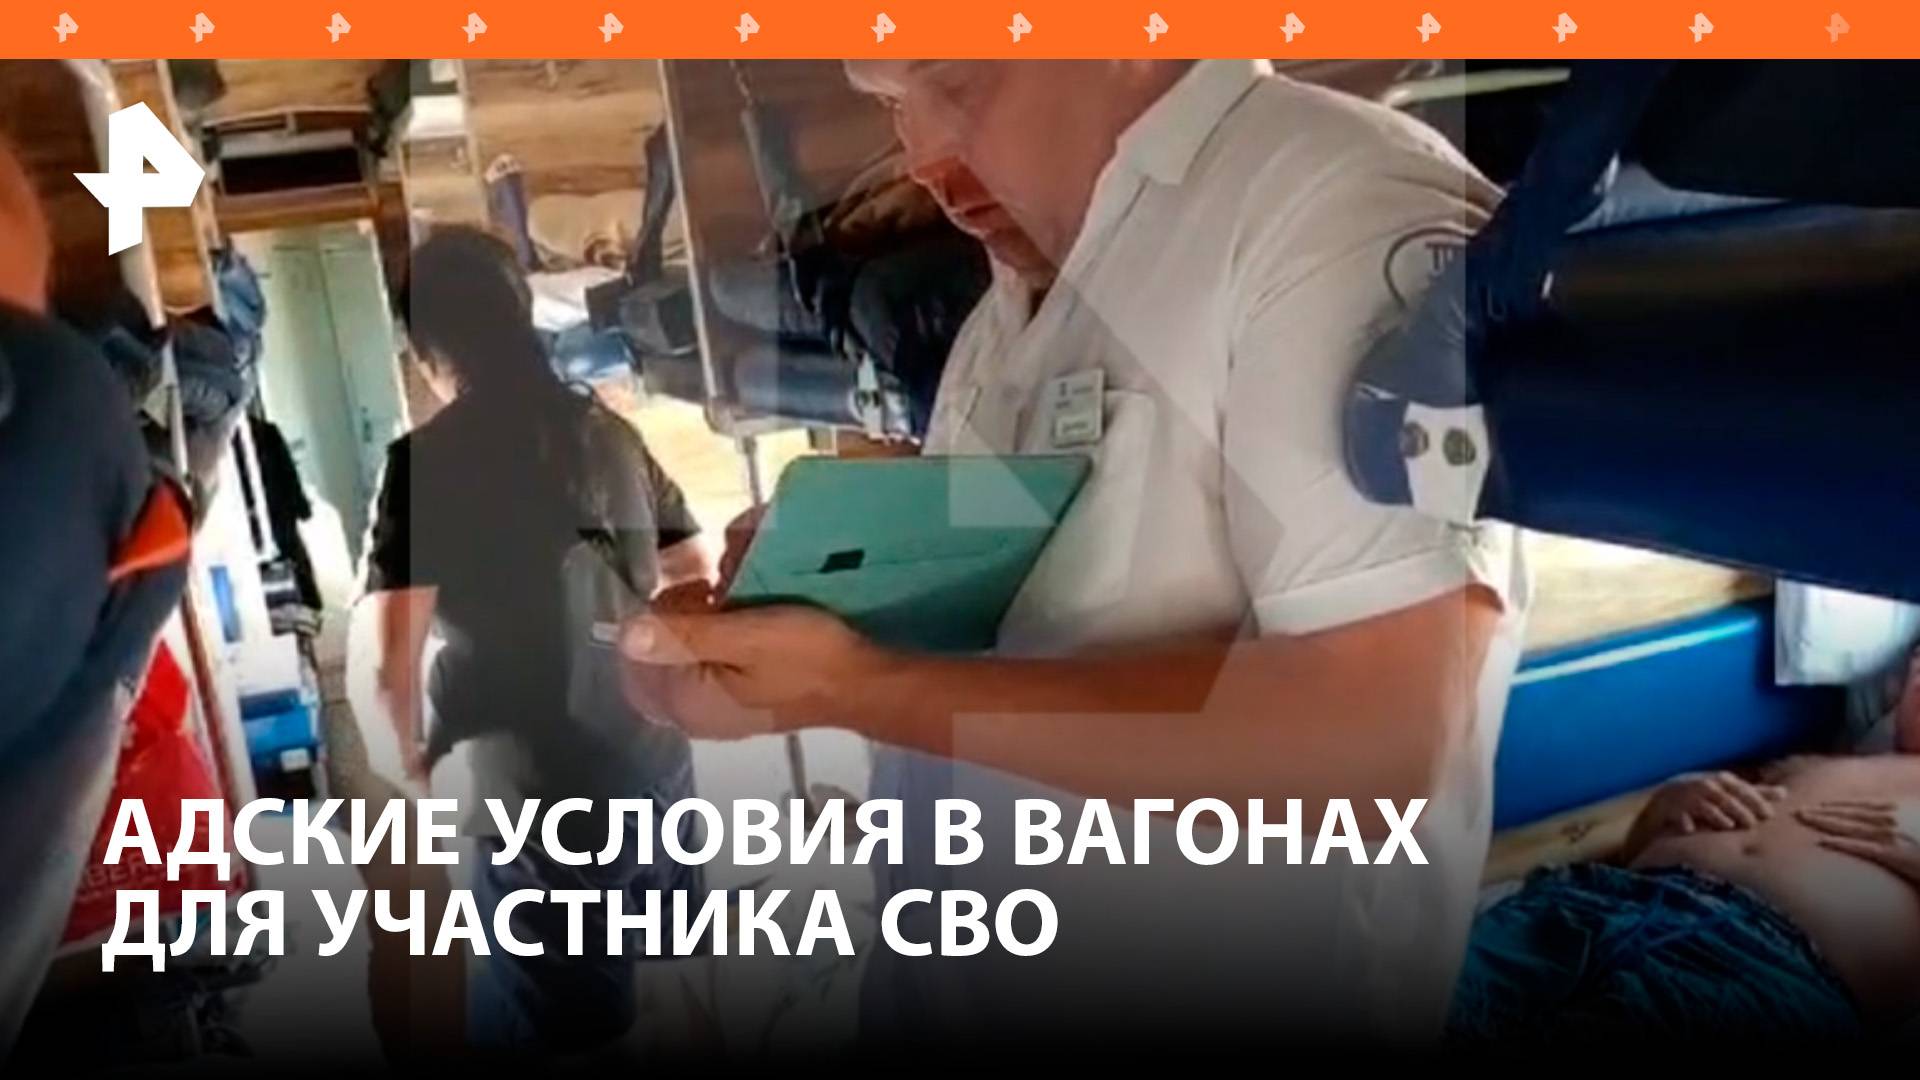 Раненый участник СВО был вынужден ехать в поезде из Евпатории в Москву в адских условиях / РЕН